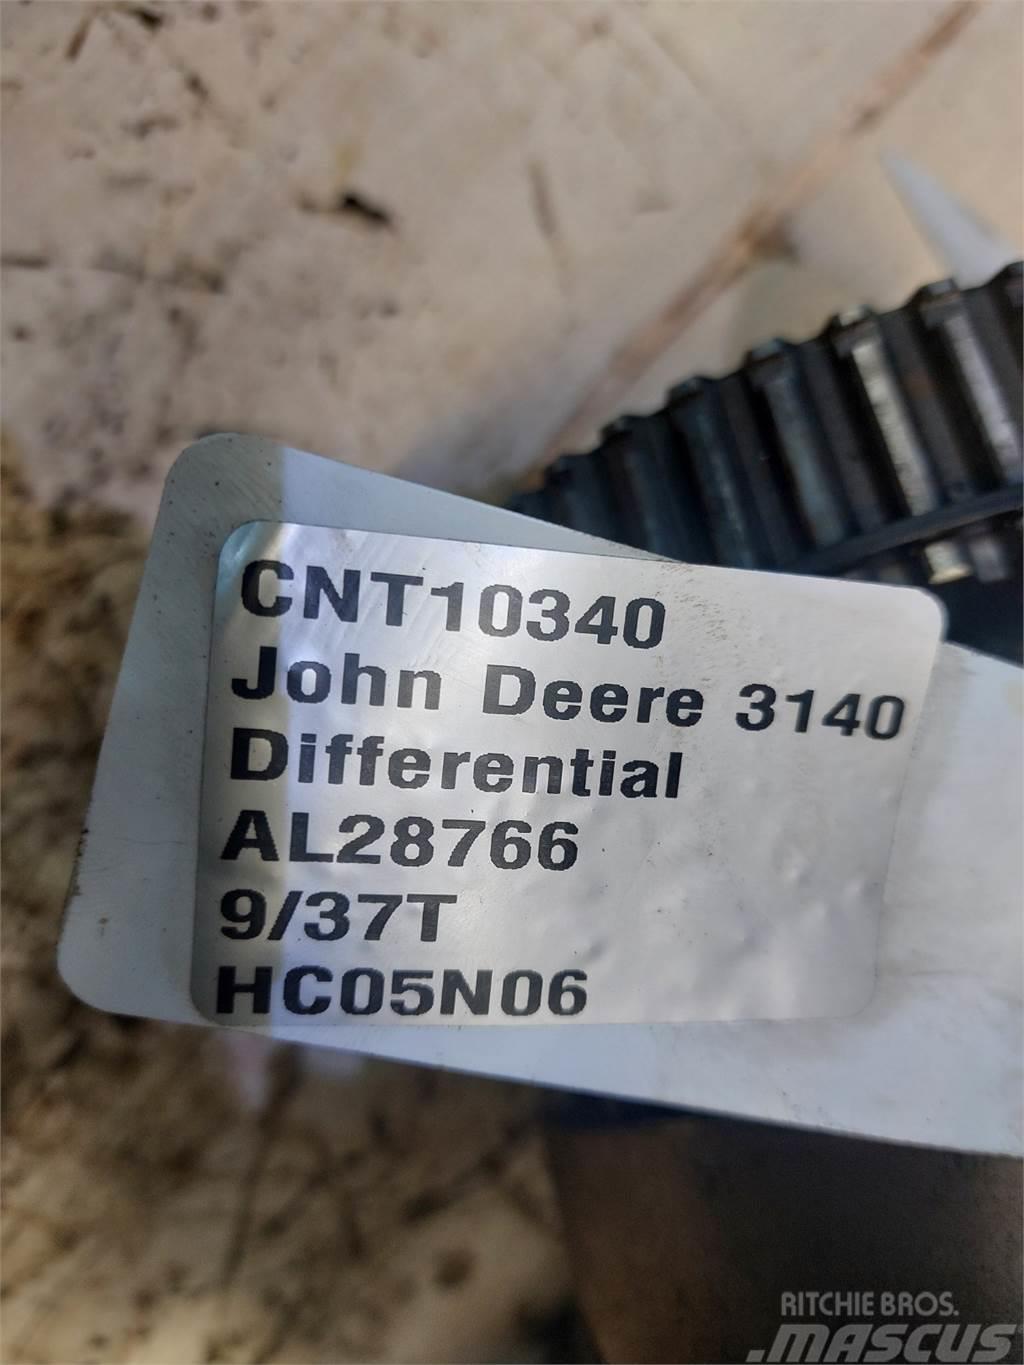 John Deere 3140 Transmisija